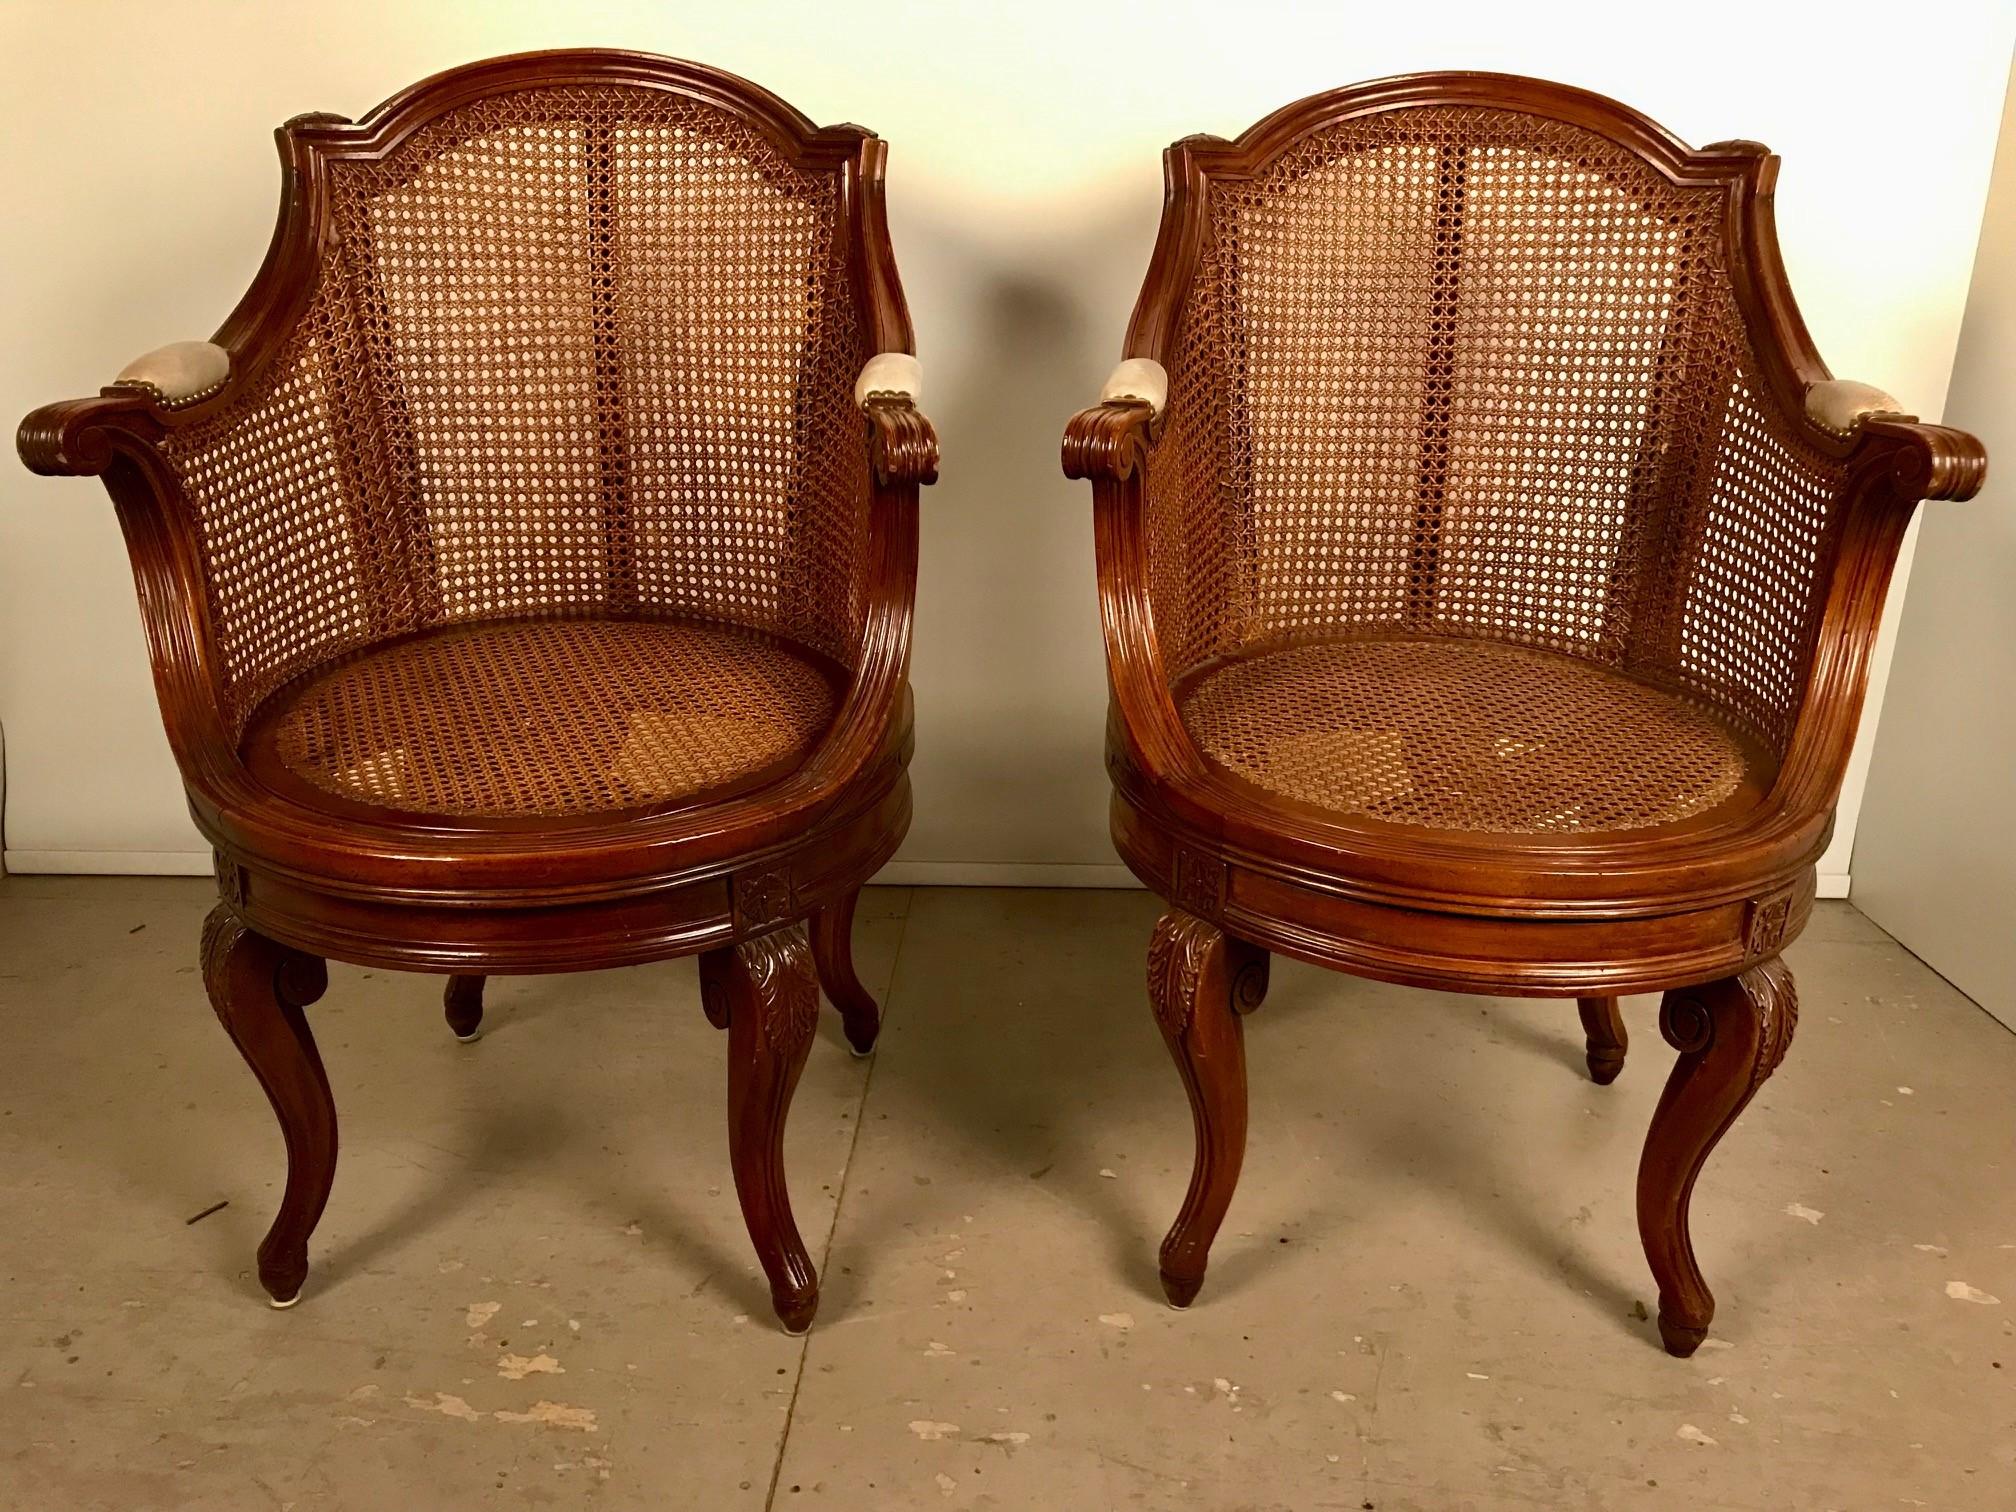 Paire de fauteuils pivotants en noyer de style Louis XV. L'assise et le dossier sont en excellent état. Il s'agit d'une paire merveilleuse et assez confortable, avec un dossier incurvé à patera et rembourré de cuir sur des accoudoirs sculptés,